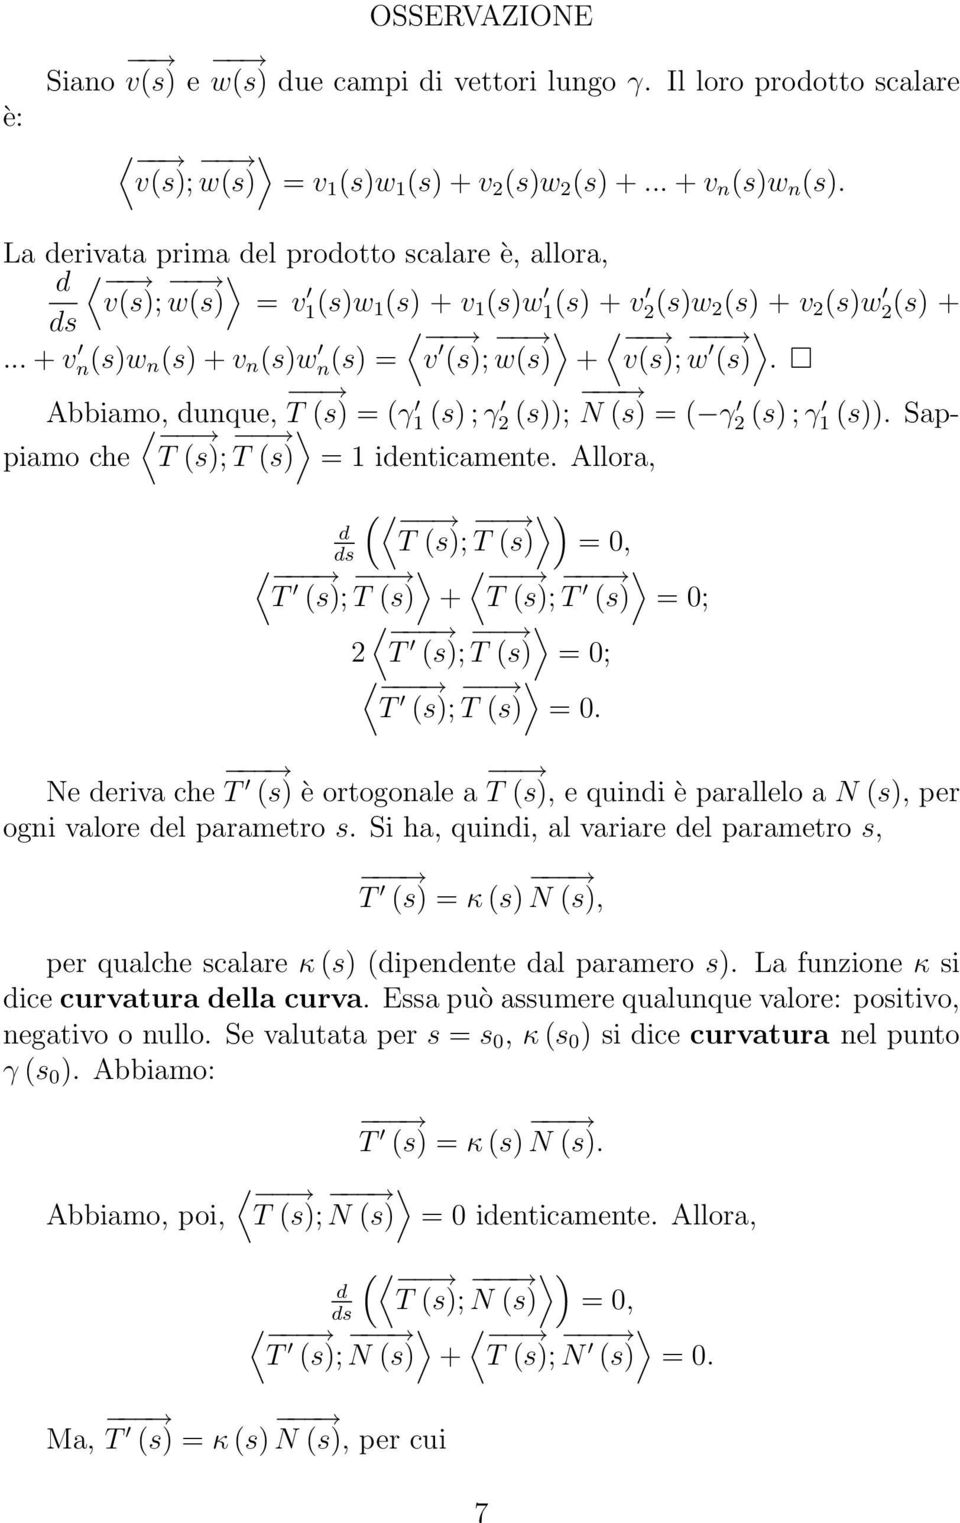 = ( γ 2 (s) ; γ 1 (s)) Sappiamo che T (s); T (s) = 1 identicamente Allora, ( d T (s); ) T (s) = 0, T (s); T (s) + T (s); T (s) = 0; 2 T (s); T (s) = 0; T (s); T (s) = 0 Ne deriva che T (s) è